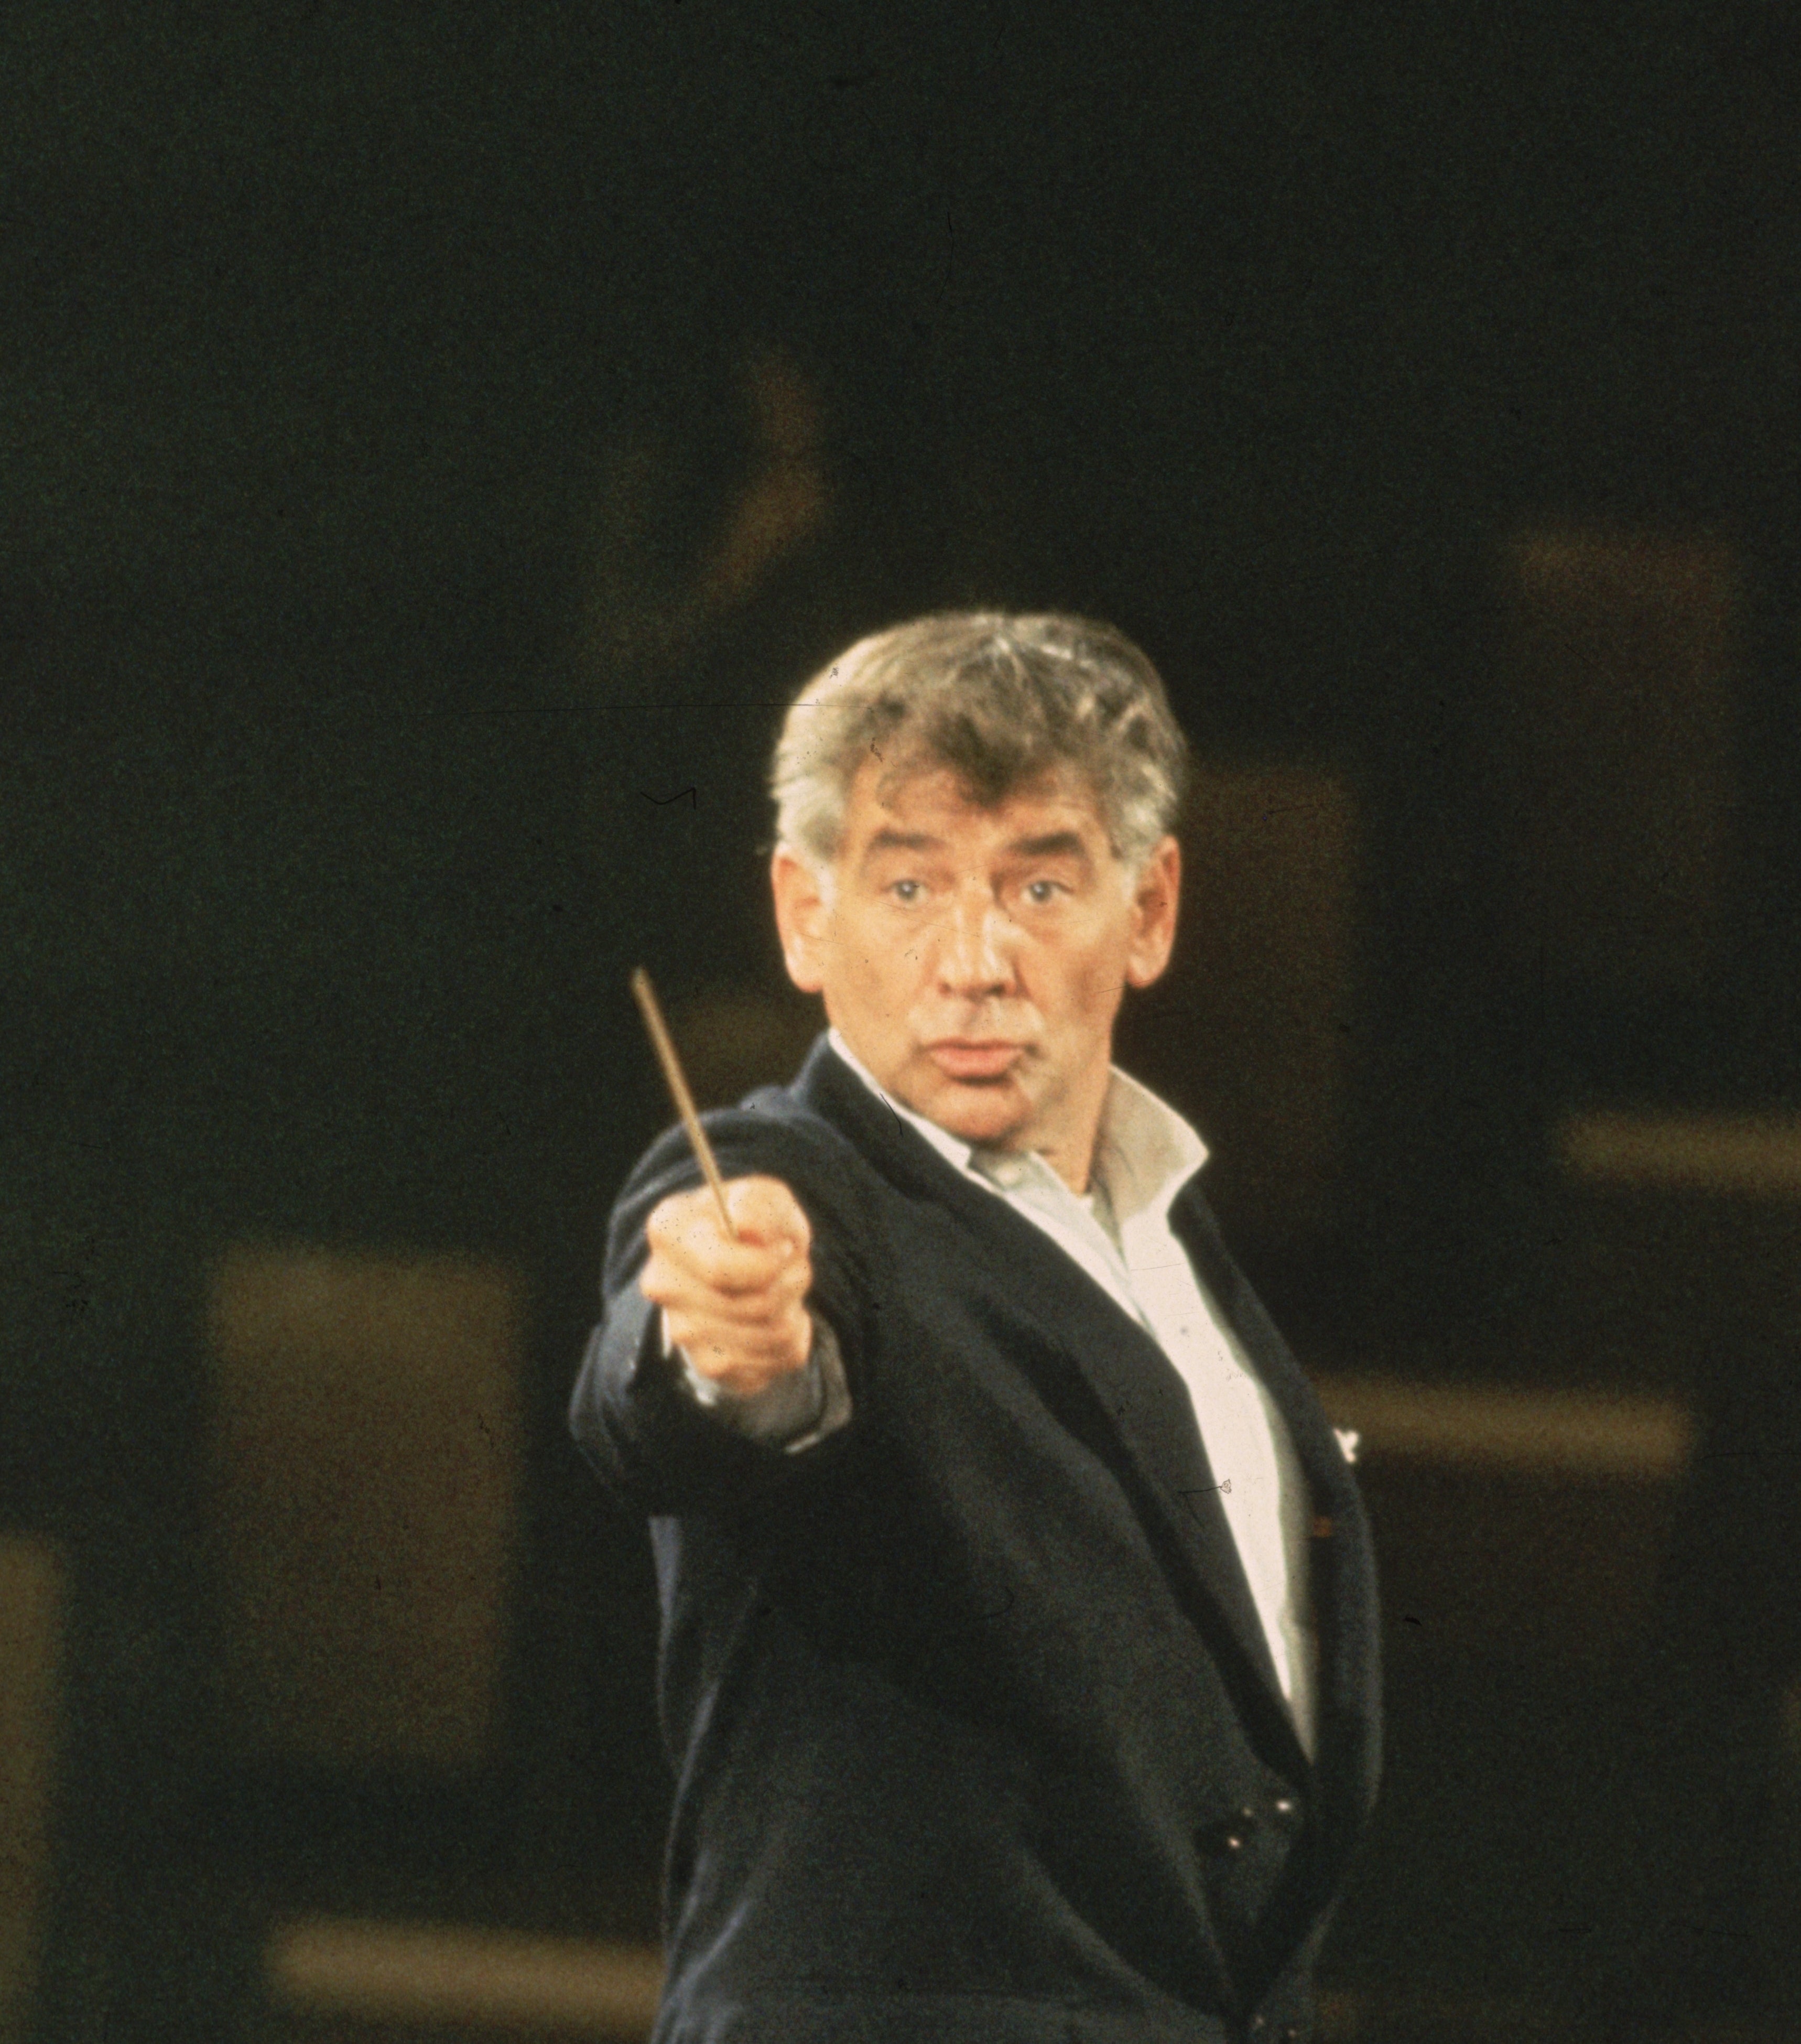 Leonard Bernstein conducting an orchestra